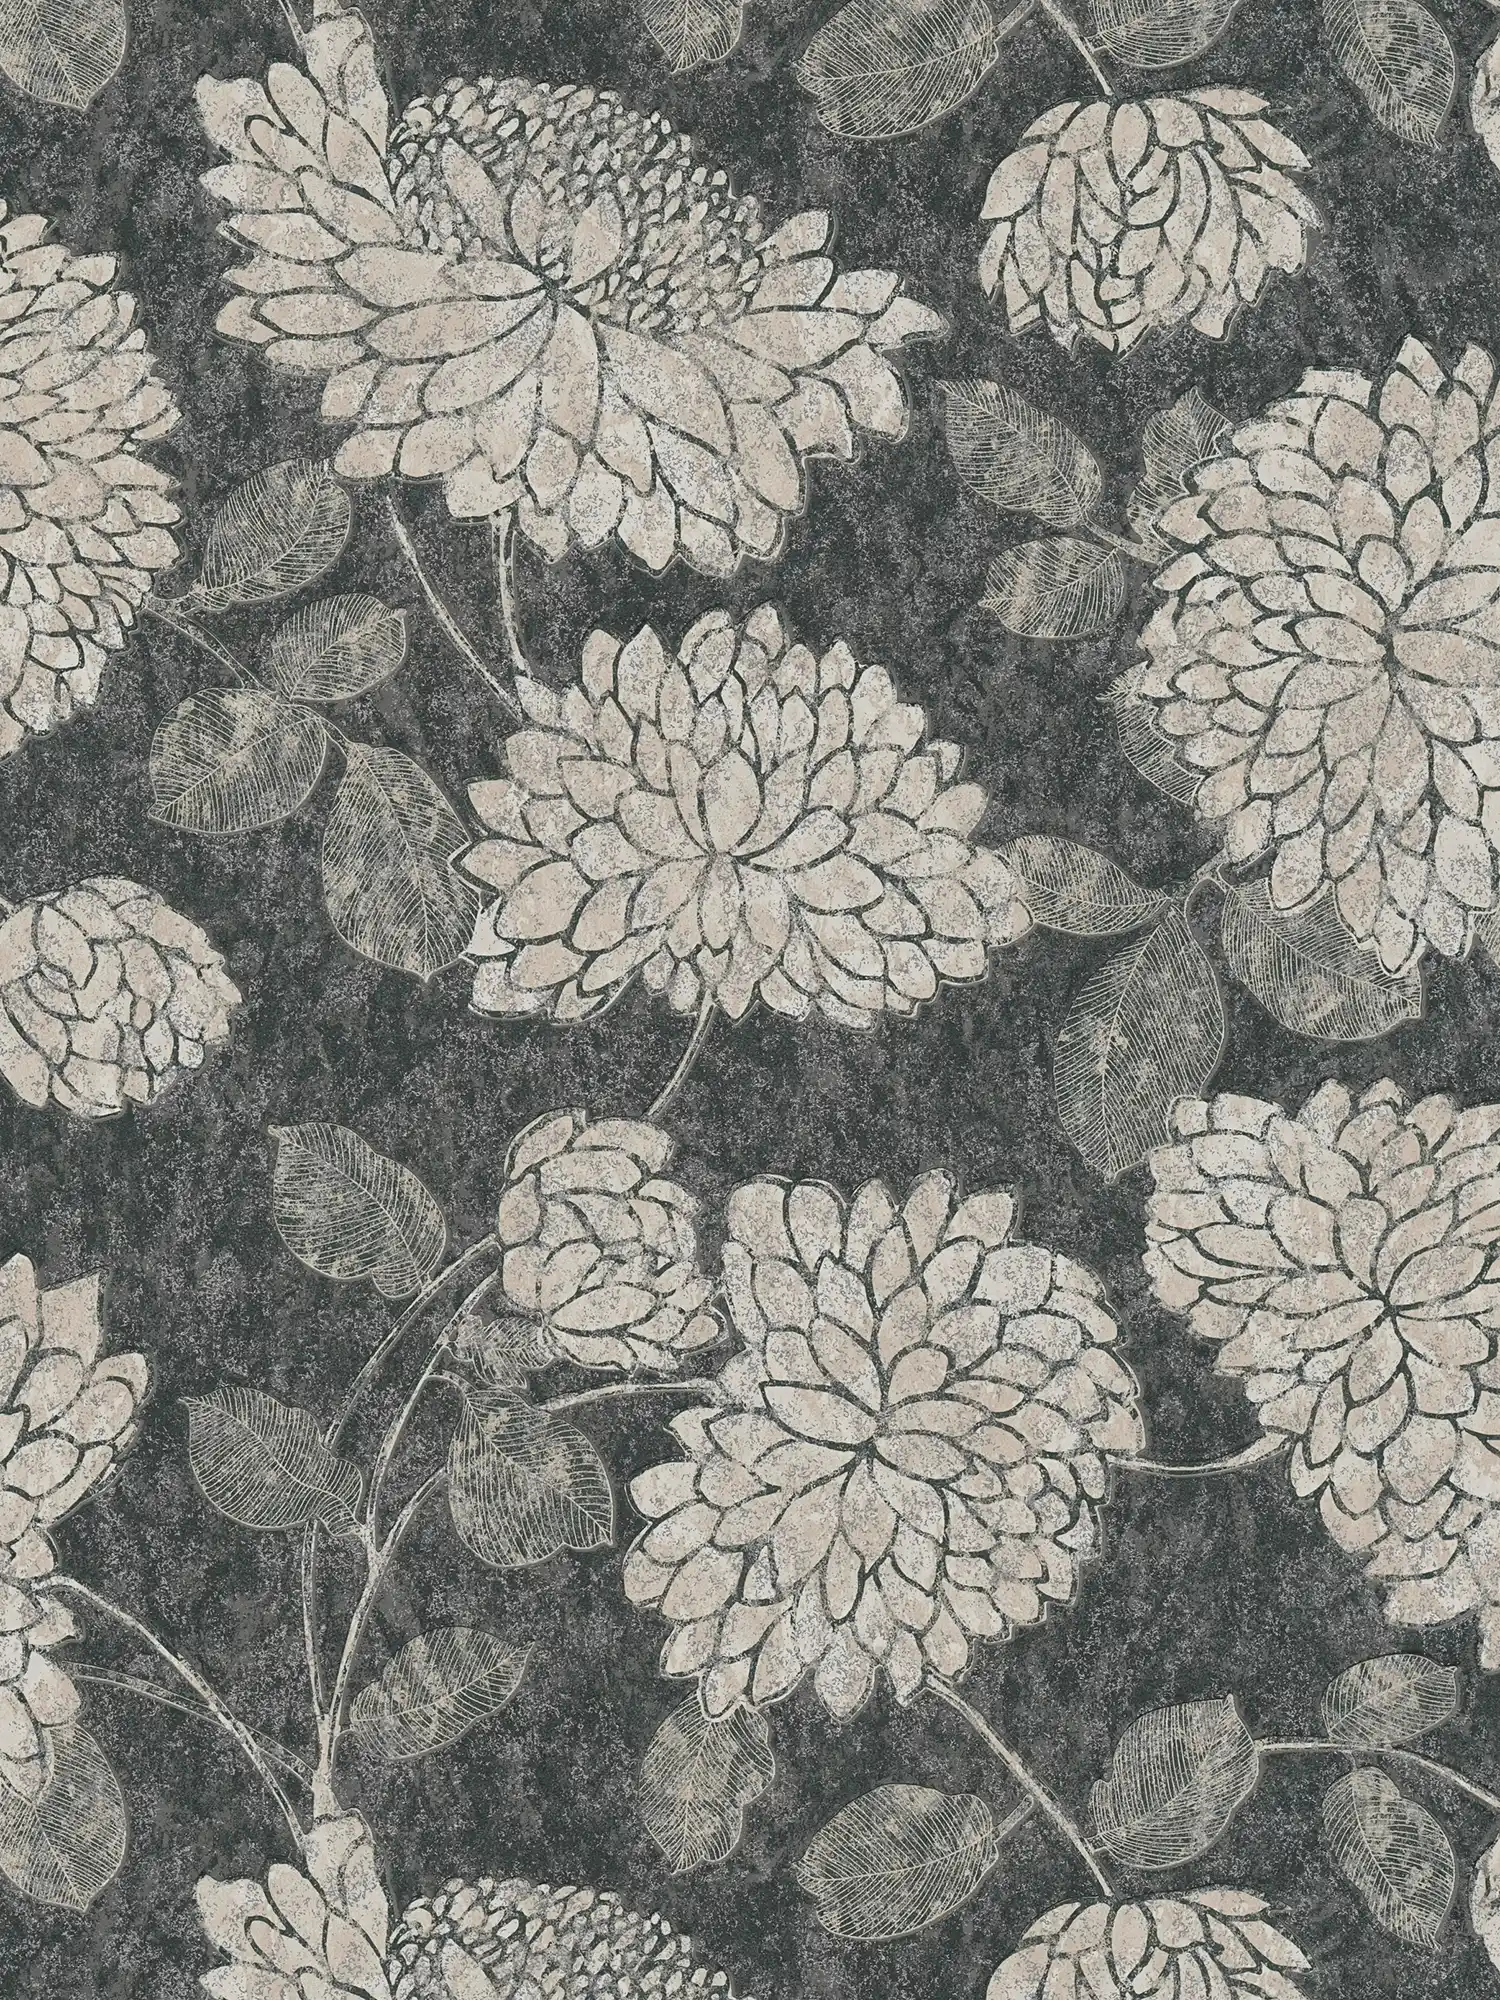 Mustertapete mit Blumen mit leichtem Glanz – Schwarz, Weiß, Silber
